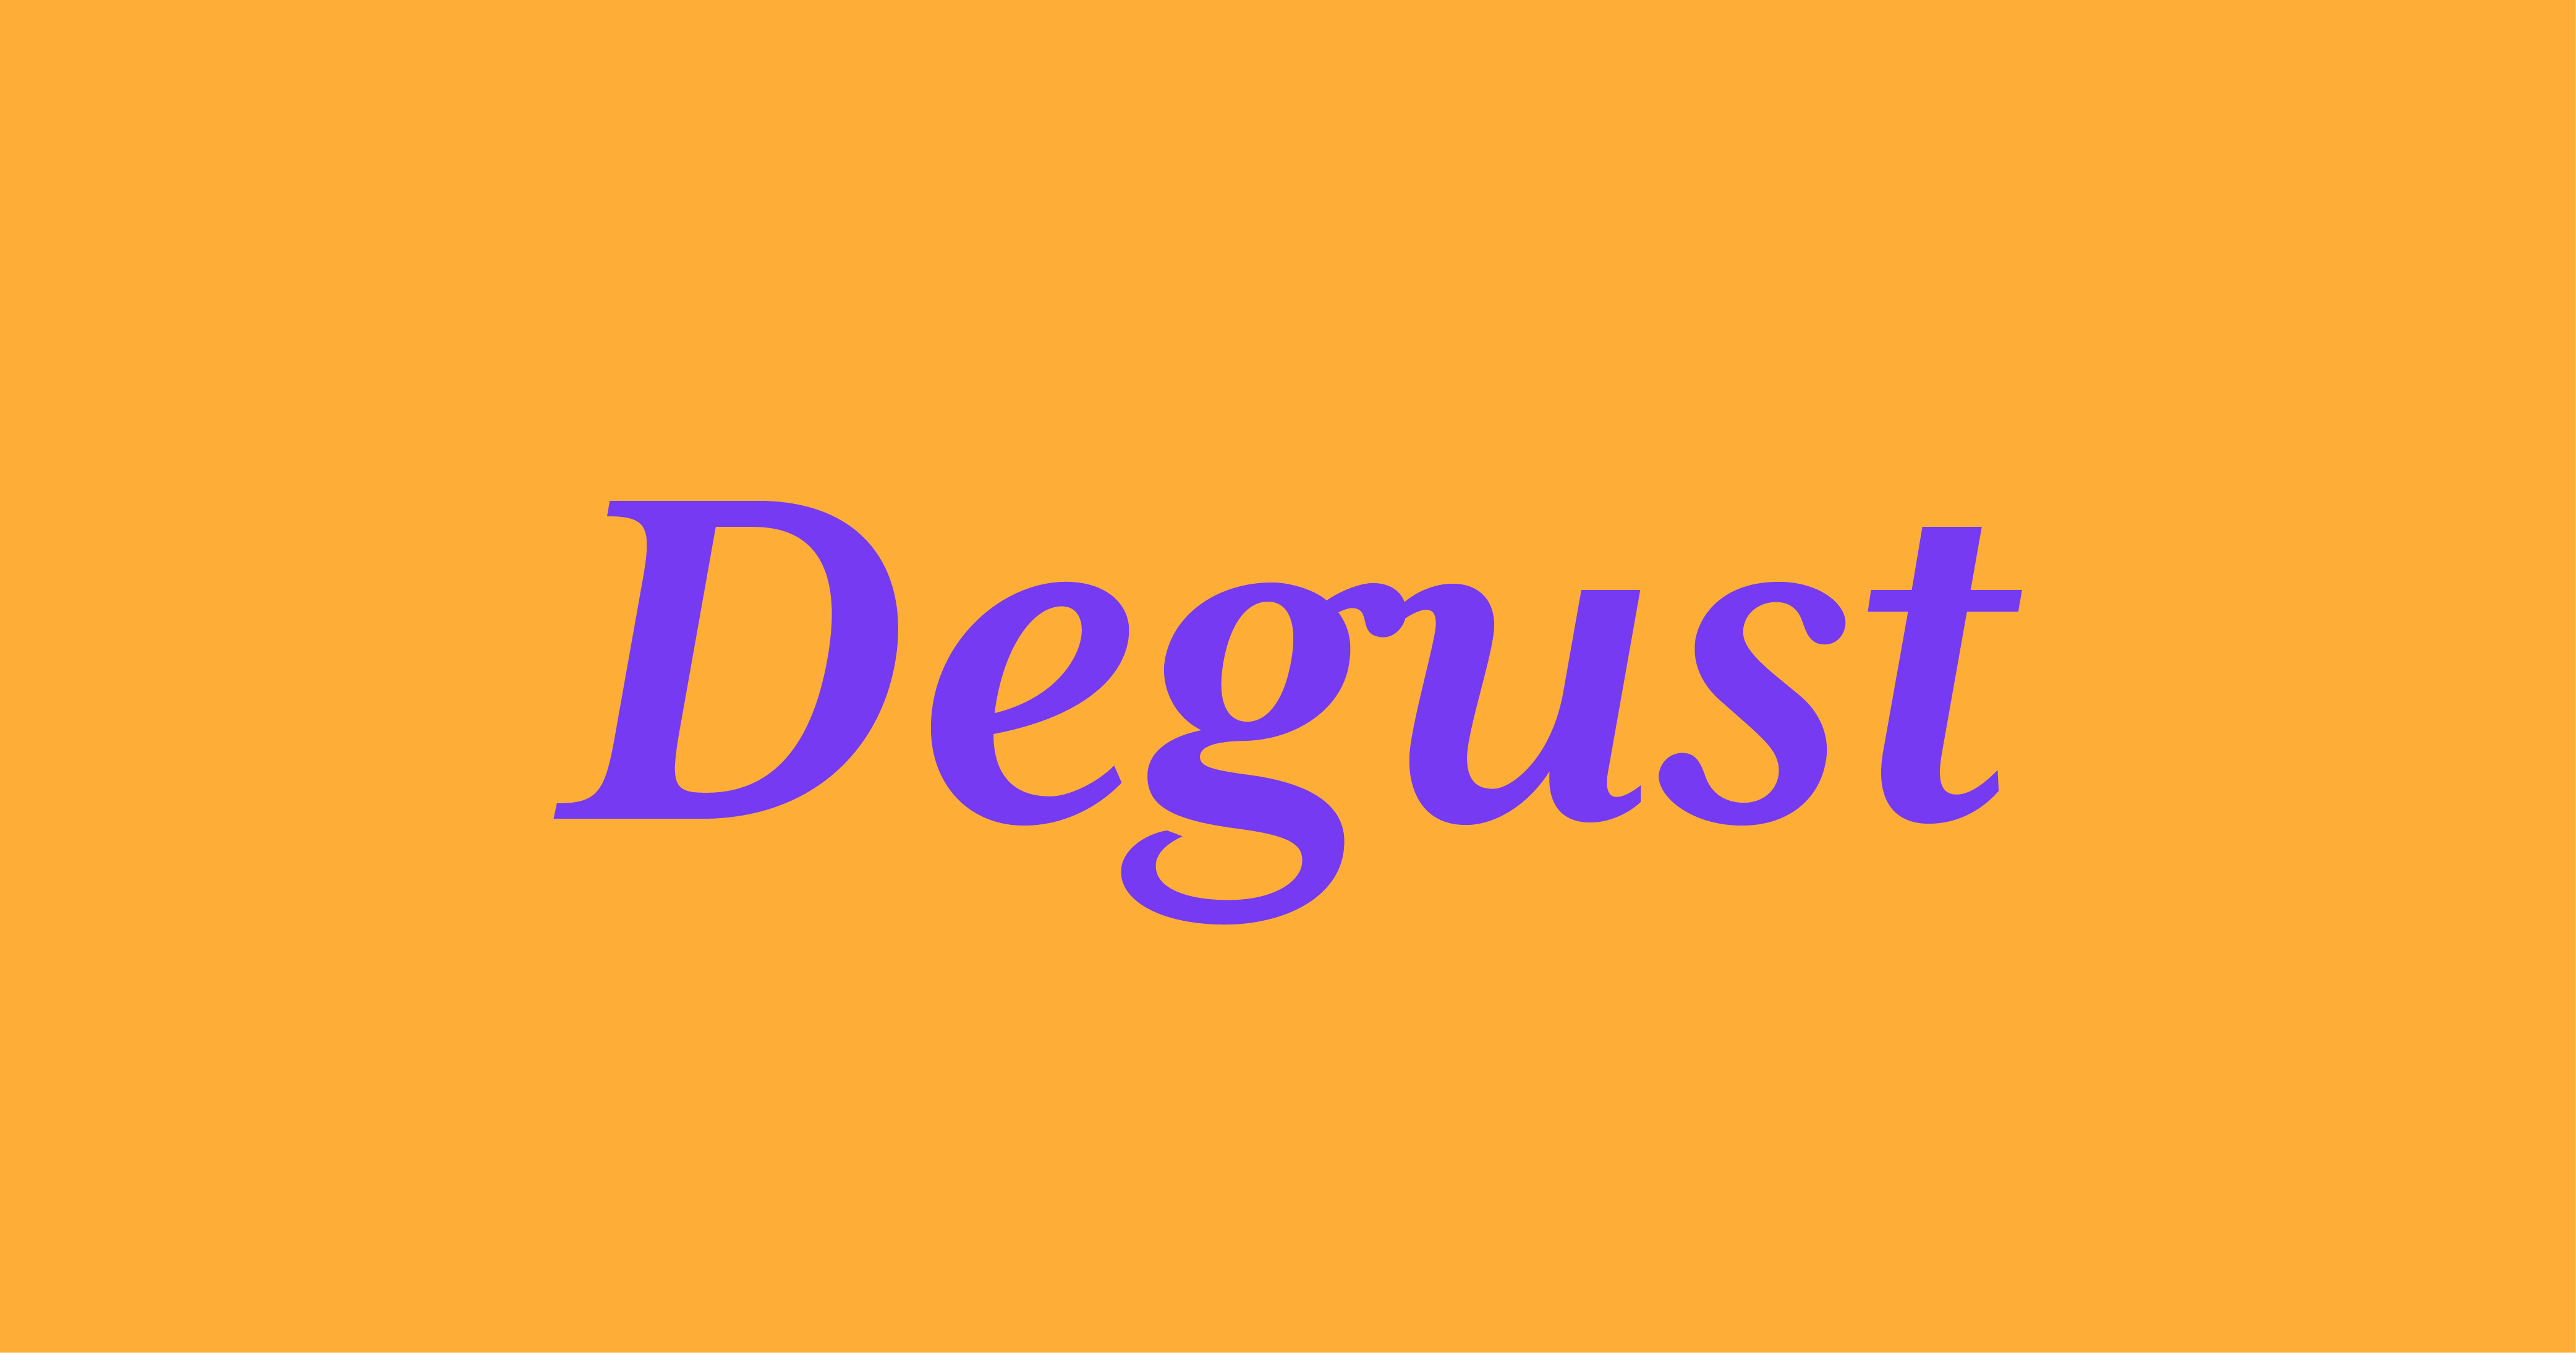 Degust